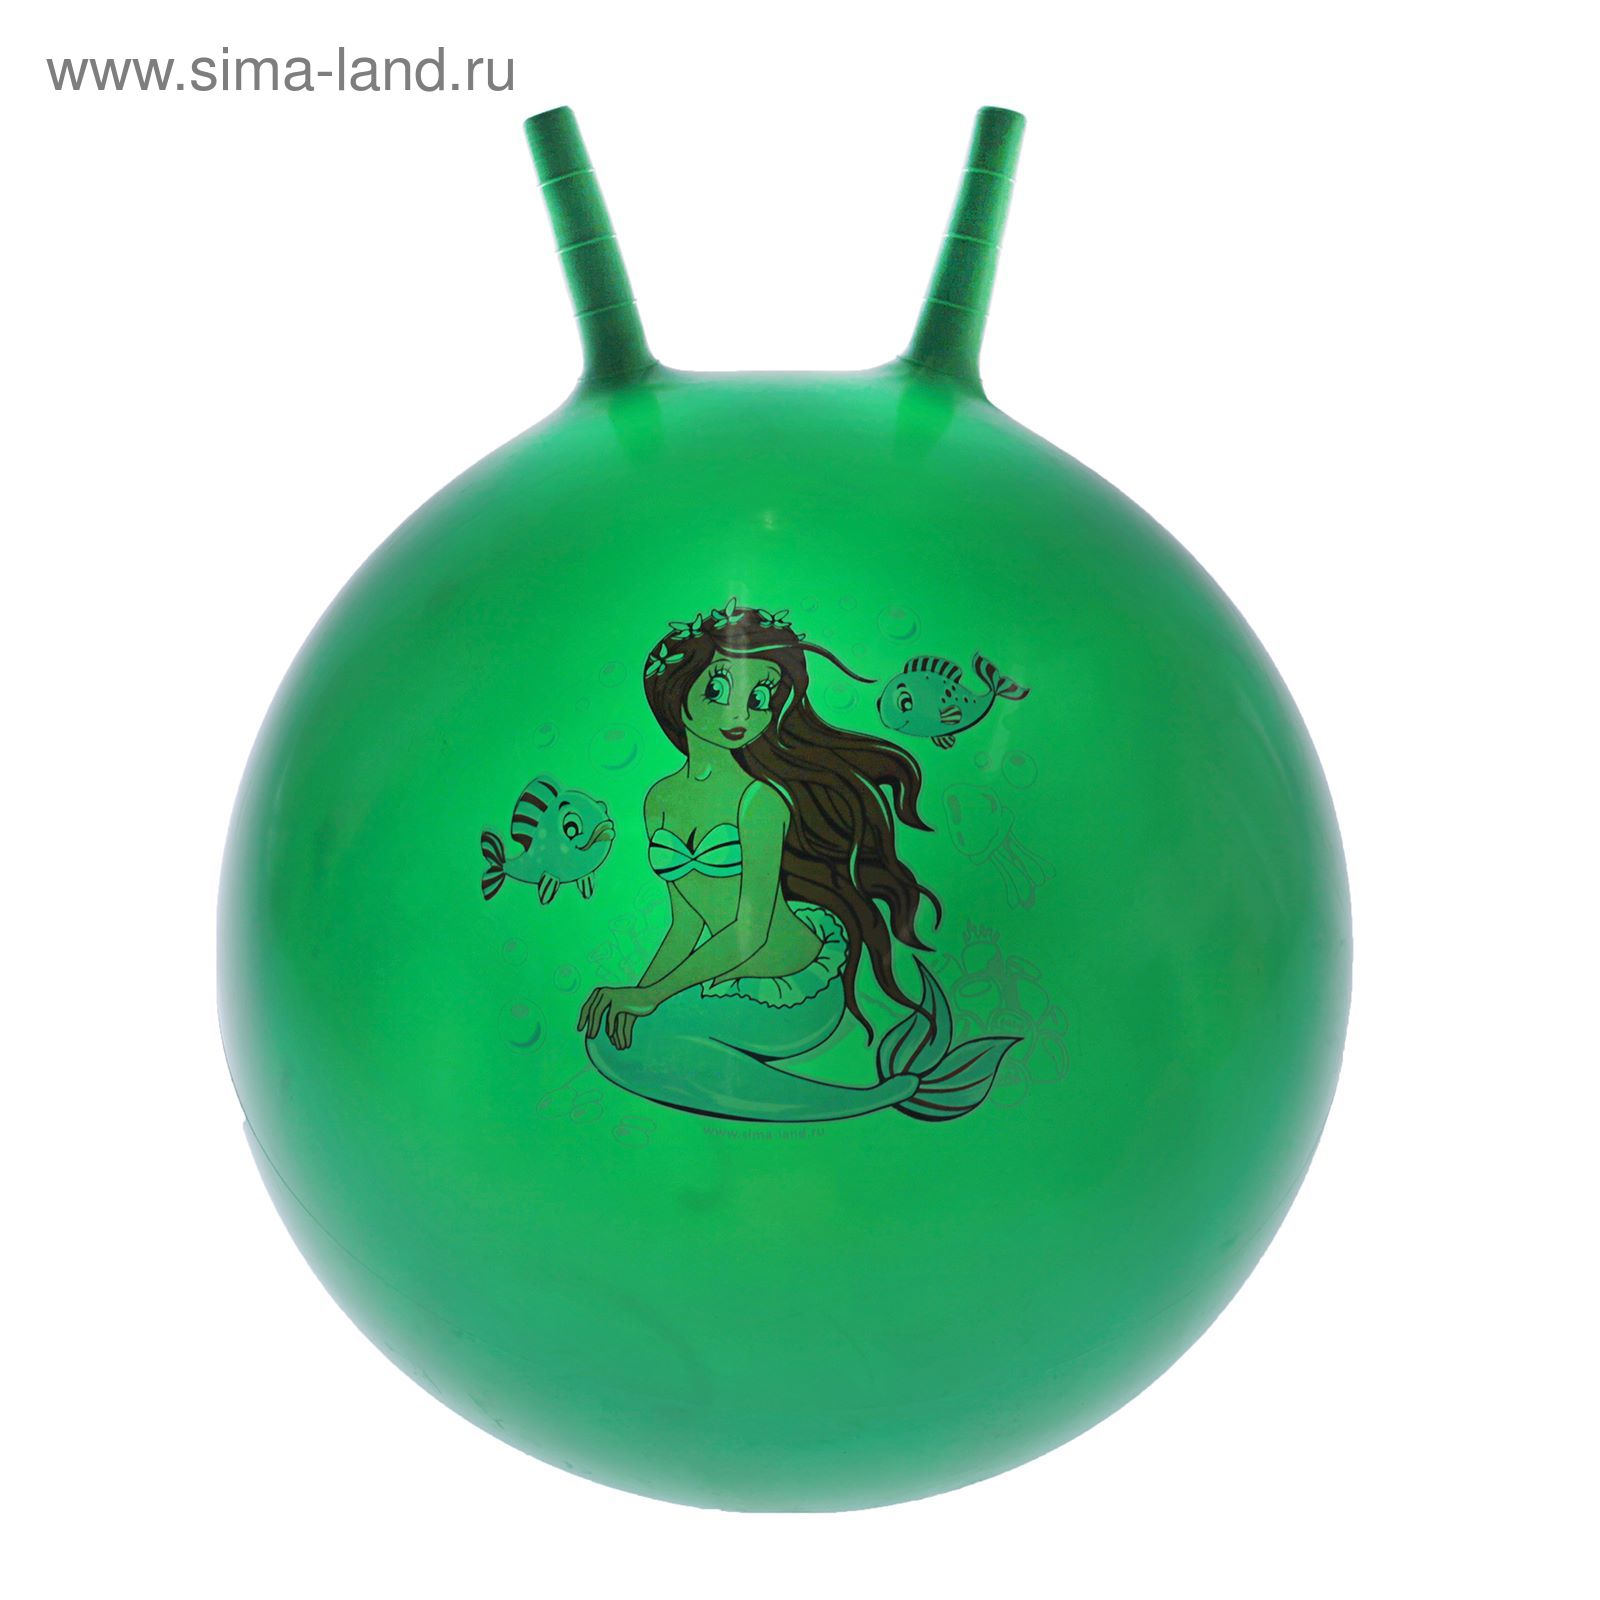 Мяч попрыгун с рожками d=45 см, 320 гр, цвета микс